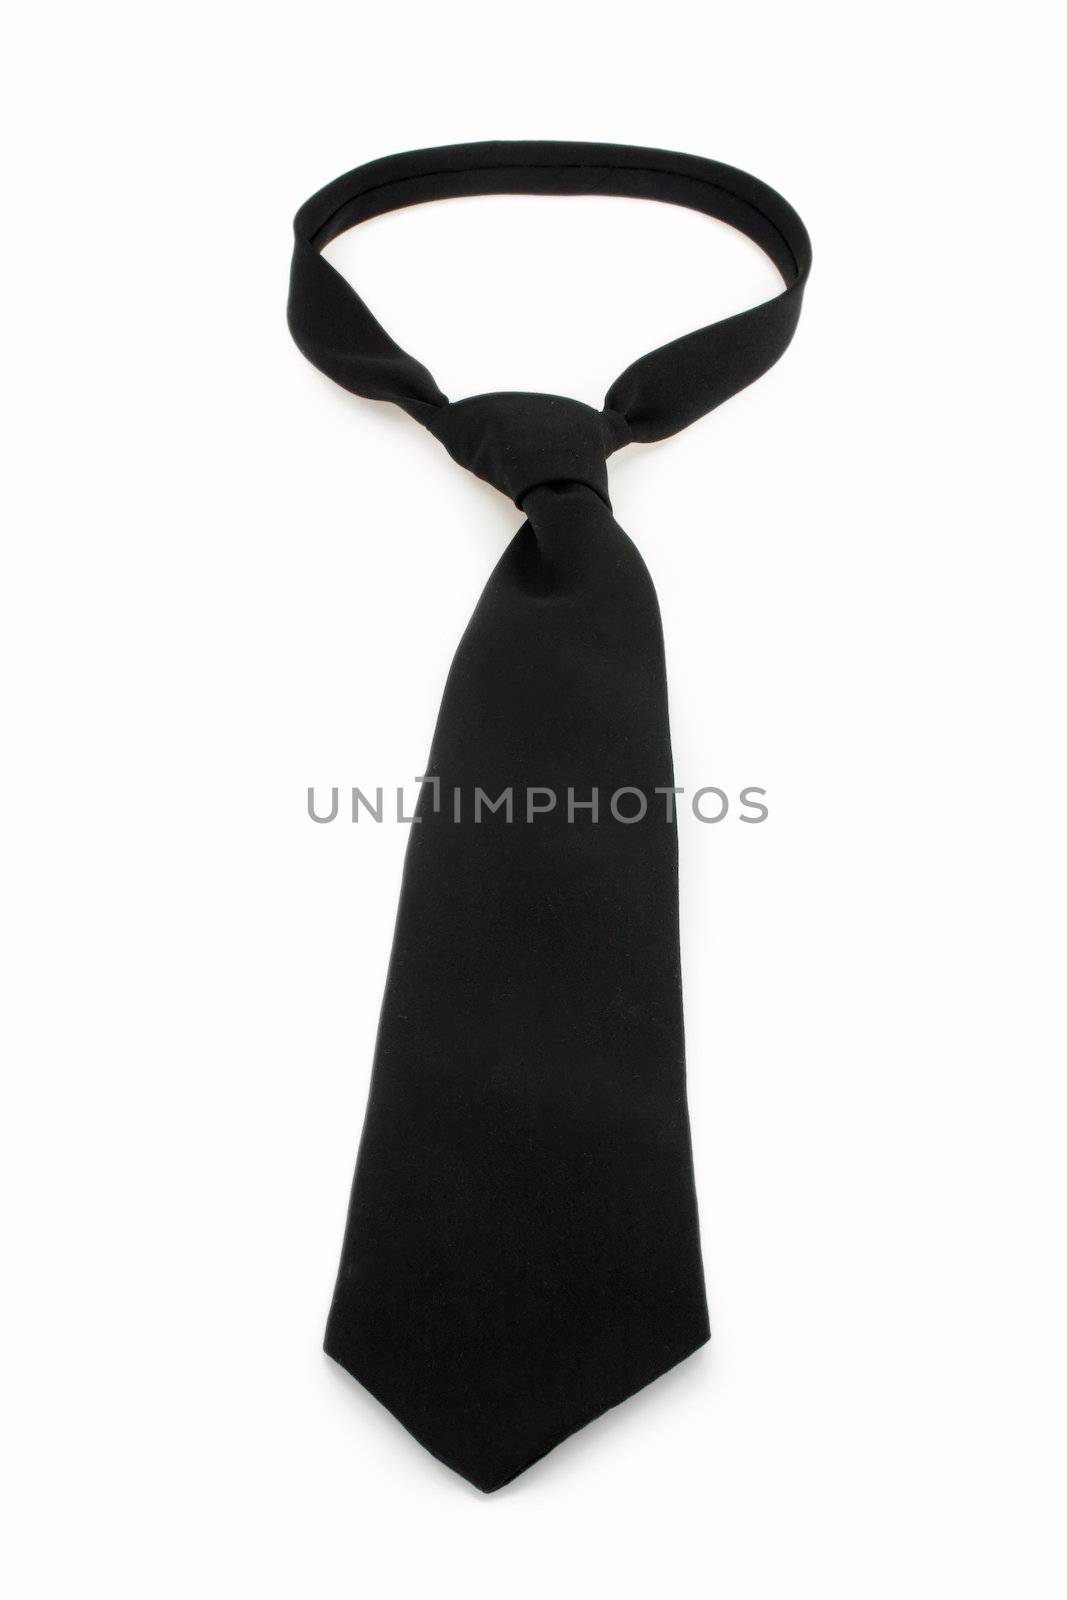 Black necktie by Teamarbeit